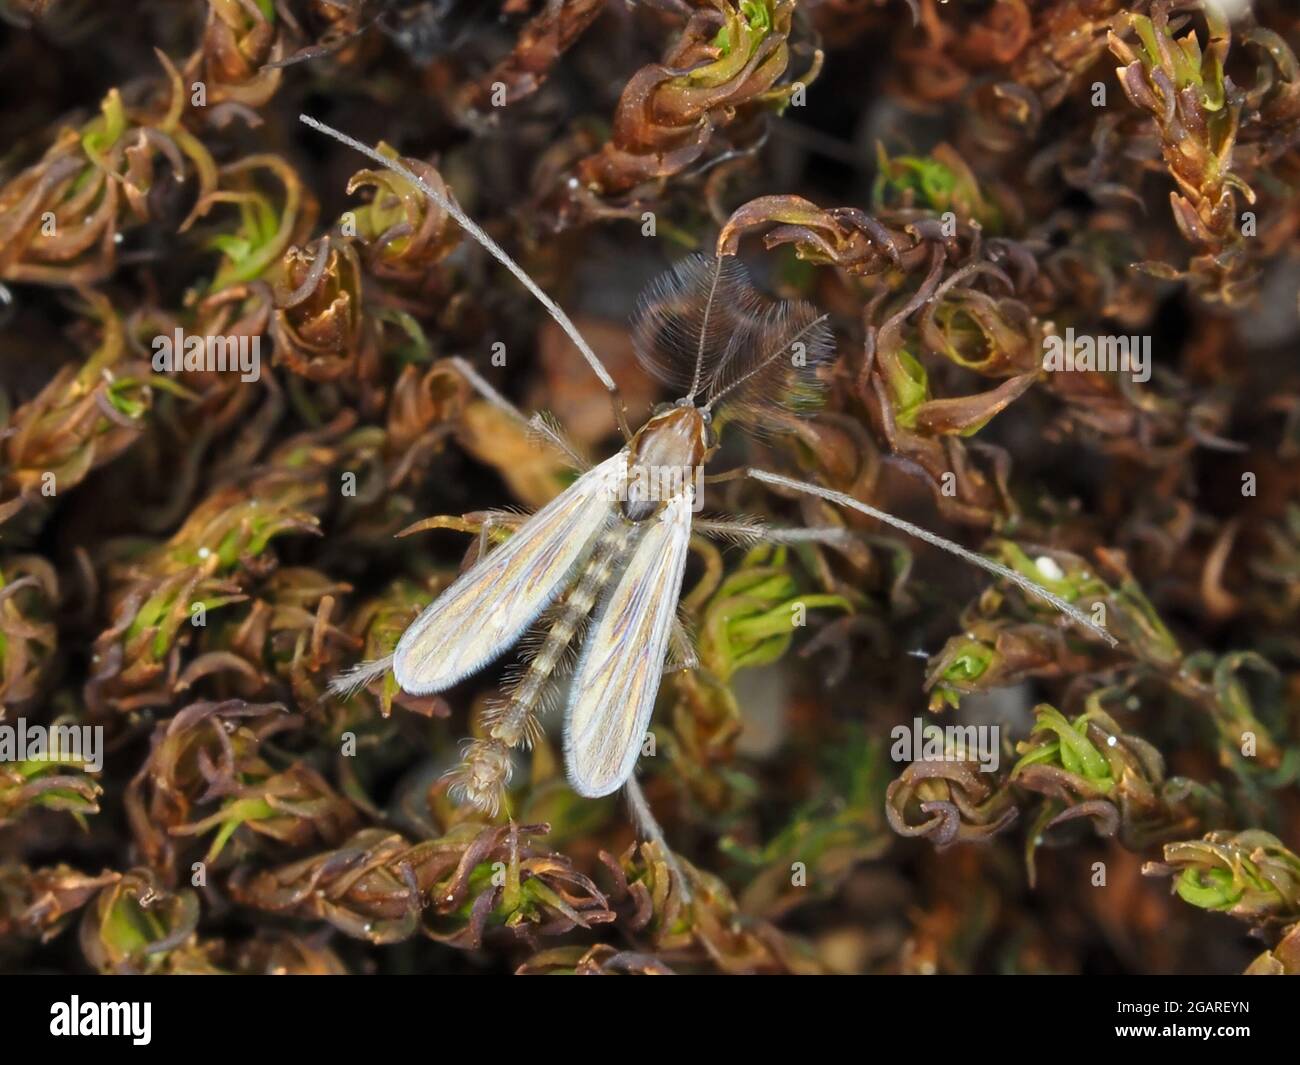 Minúsculo macho Chironomidae mediano, de aproximadamente 3mm de longitud, sin incluir las antenas Foto de stock